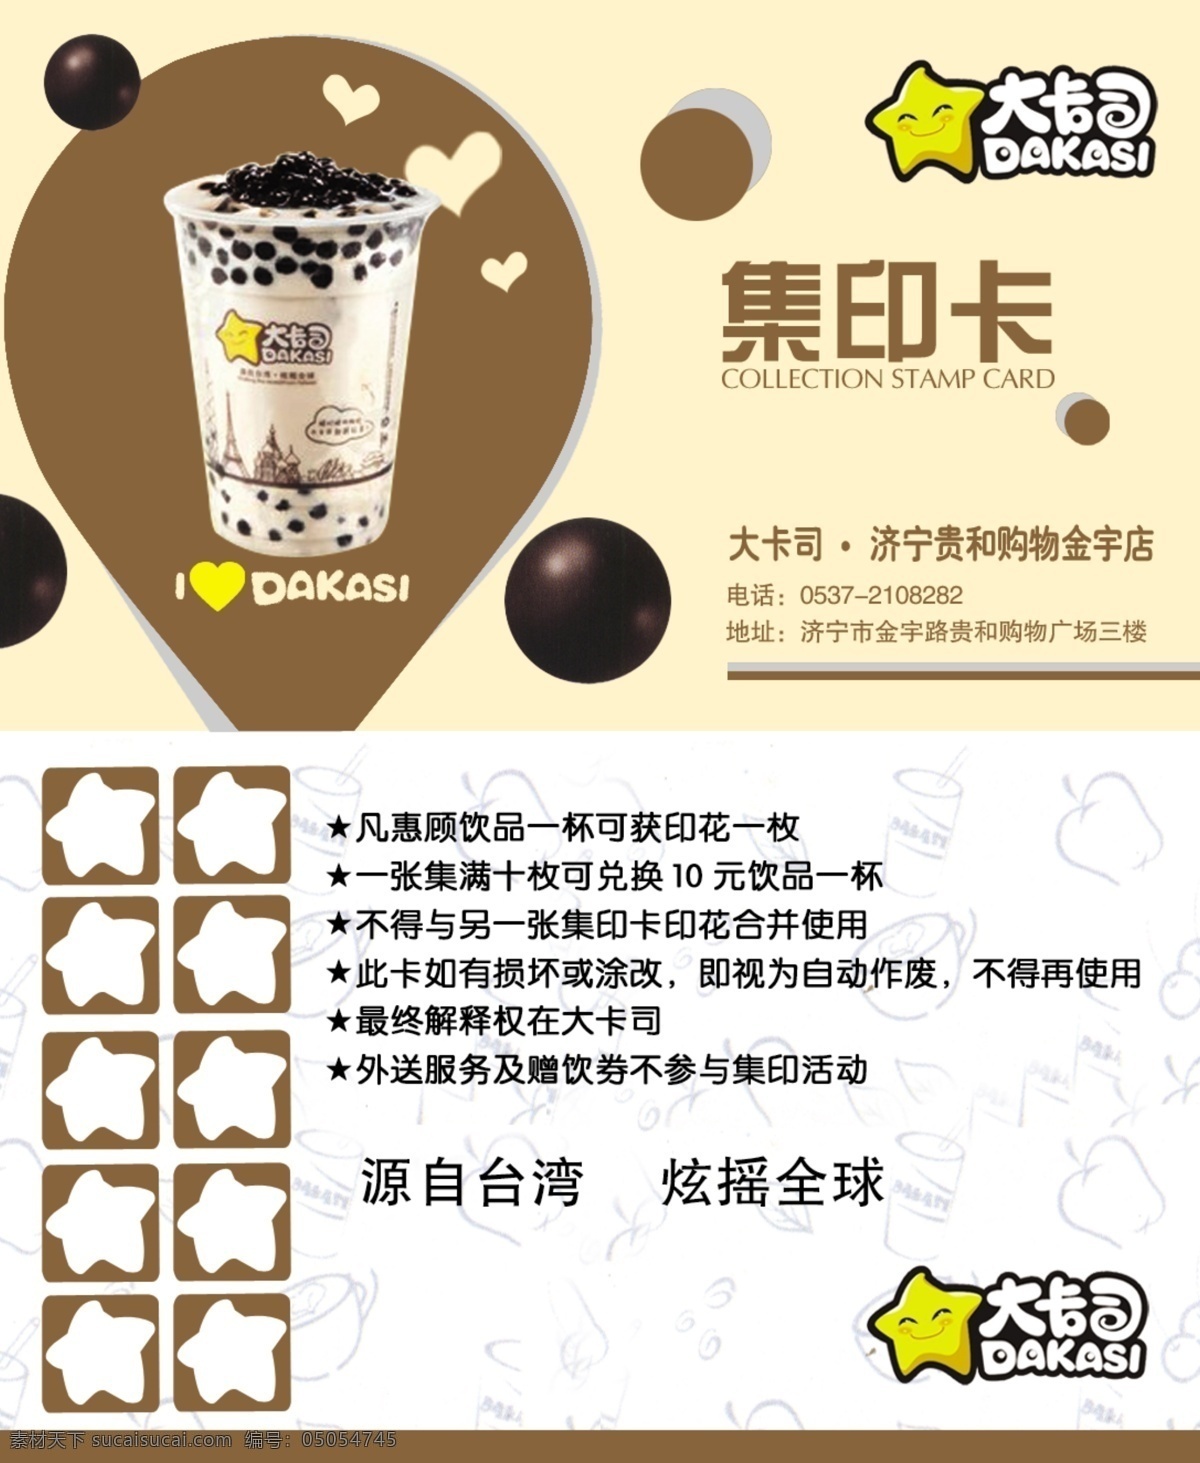 酸奶集印卡 大卡司 集印卡 源自台湾 炫摇全球 凡惠顾饮品 一杯可获 印花一枚 名片卡片